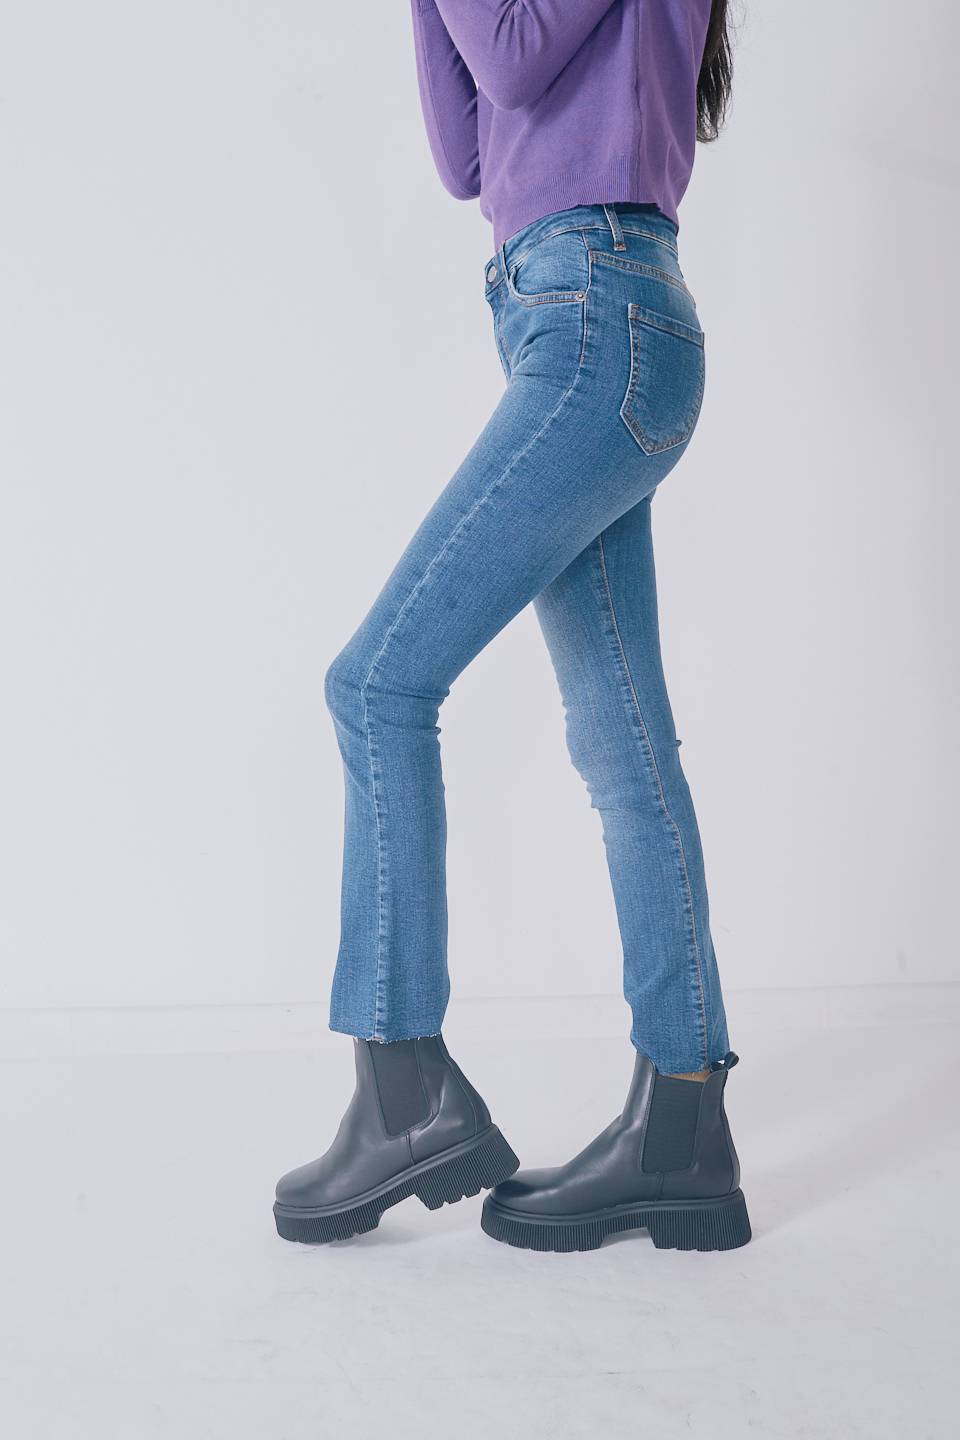 Jeans zampetta blu delavato - Autunno - Inverno 2022 | Brend